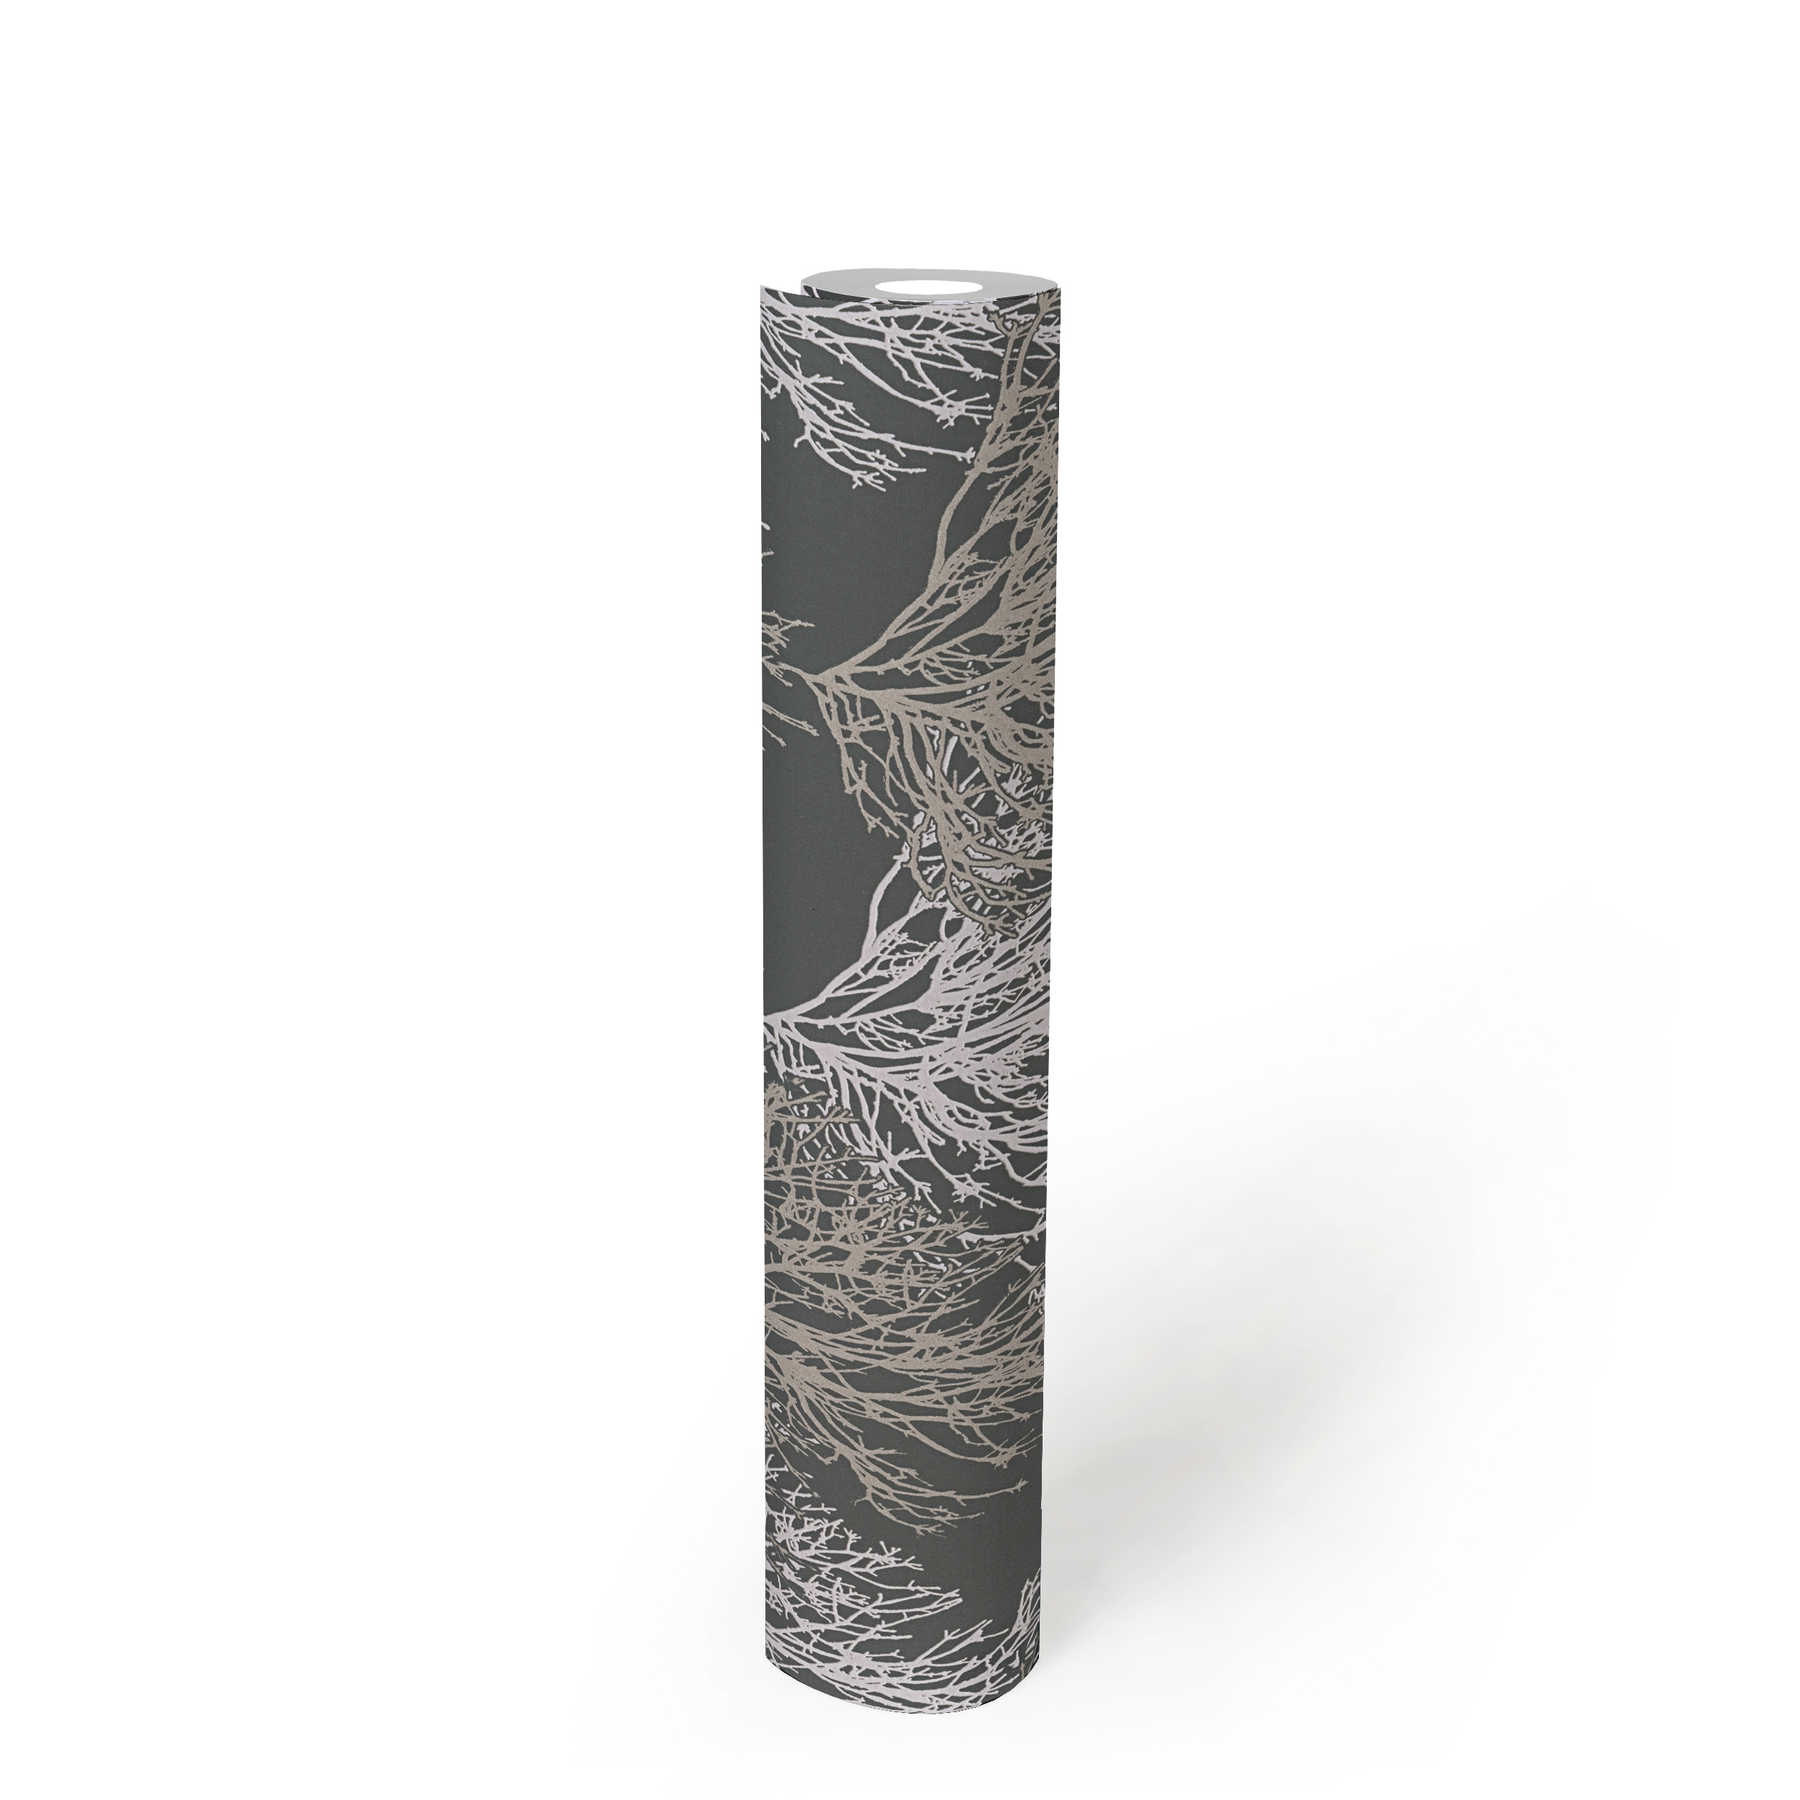             Papiertapete Baum Design mit Metallic Farben & Strukturmuster – Grau
        